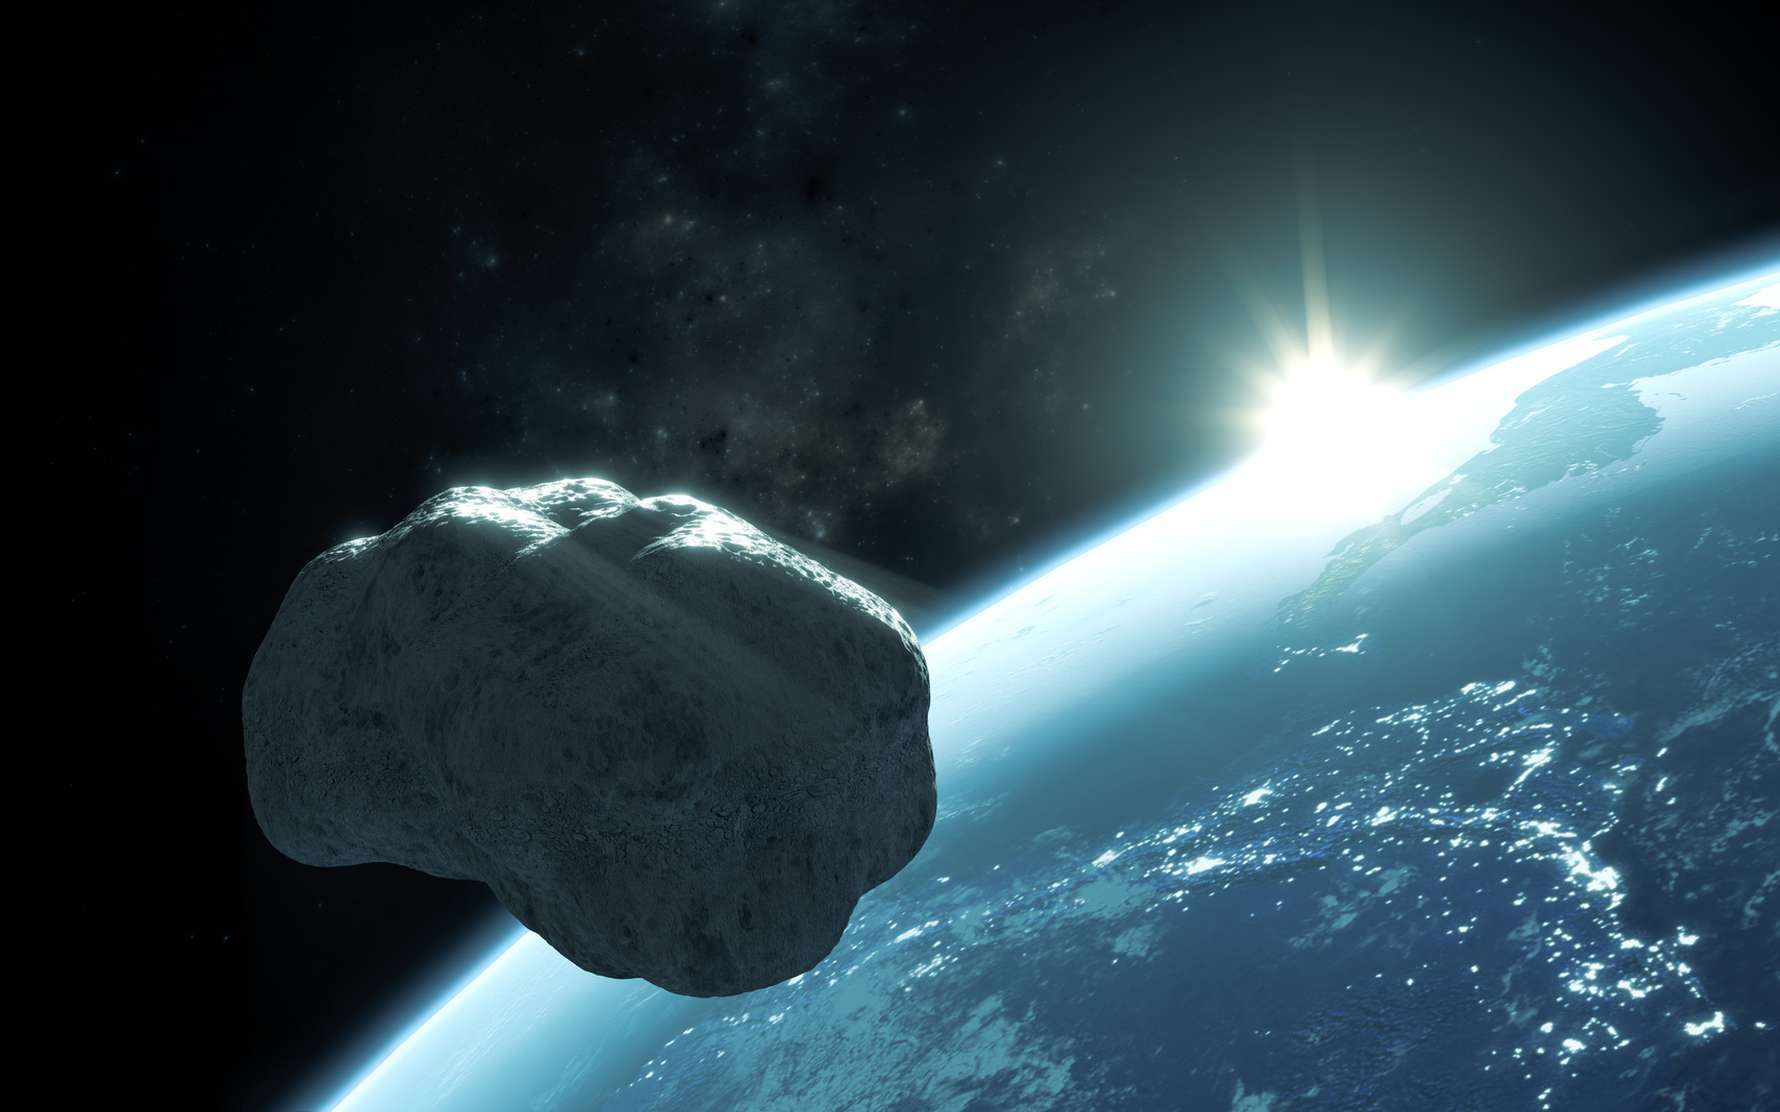 Cet astéroïde qui est passé près de la Terre est l'un des plus allongés